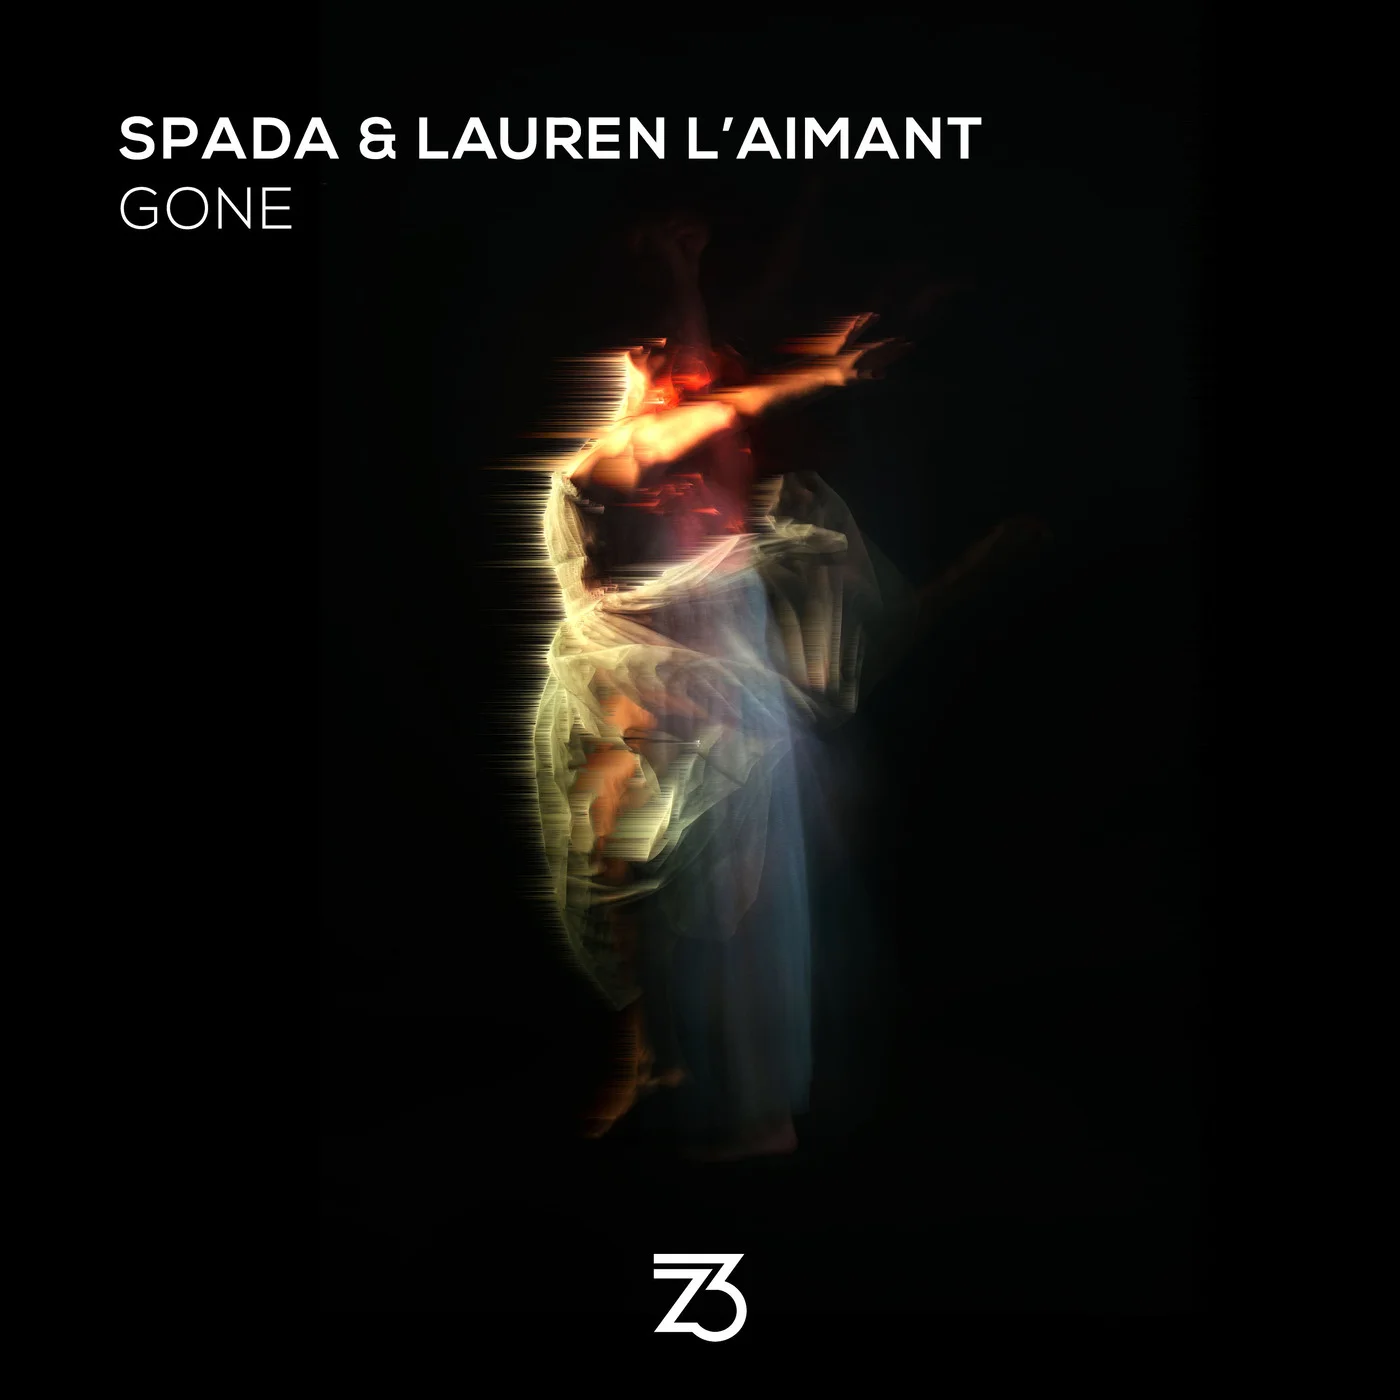 Spada & Lauren L'aimant - Gone (Extended Mix)